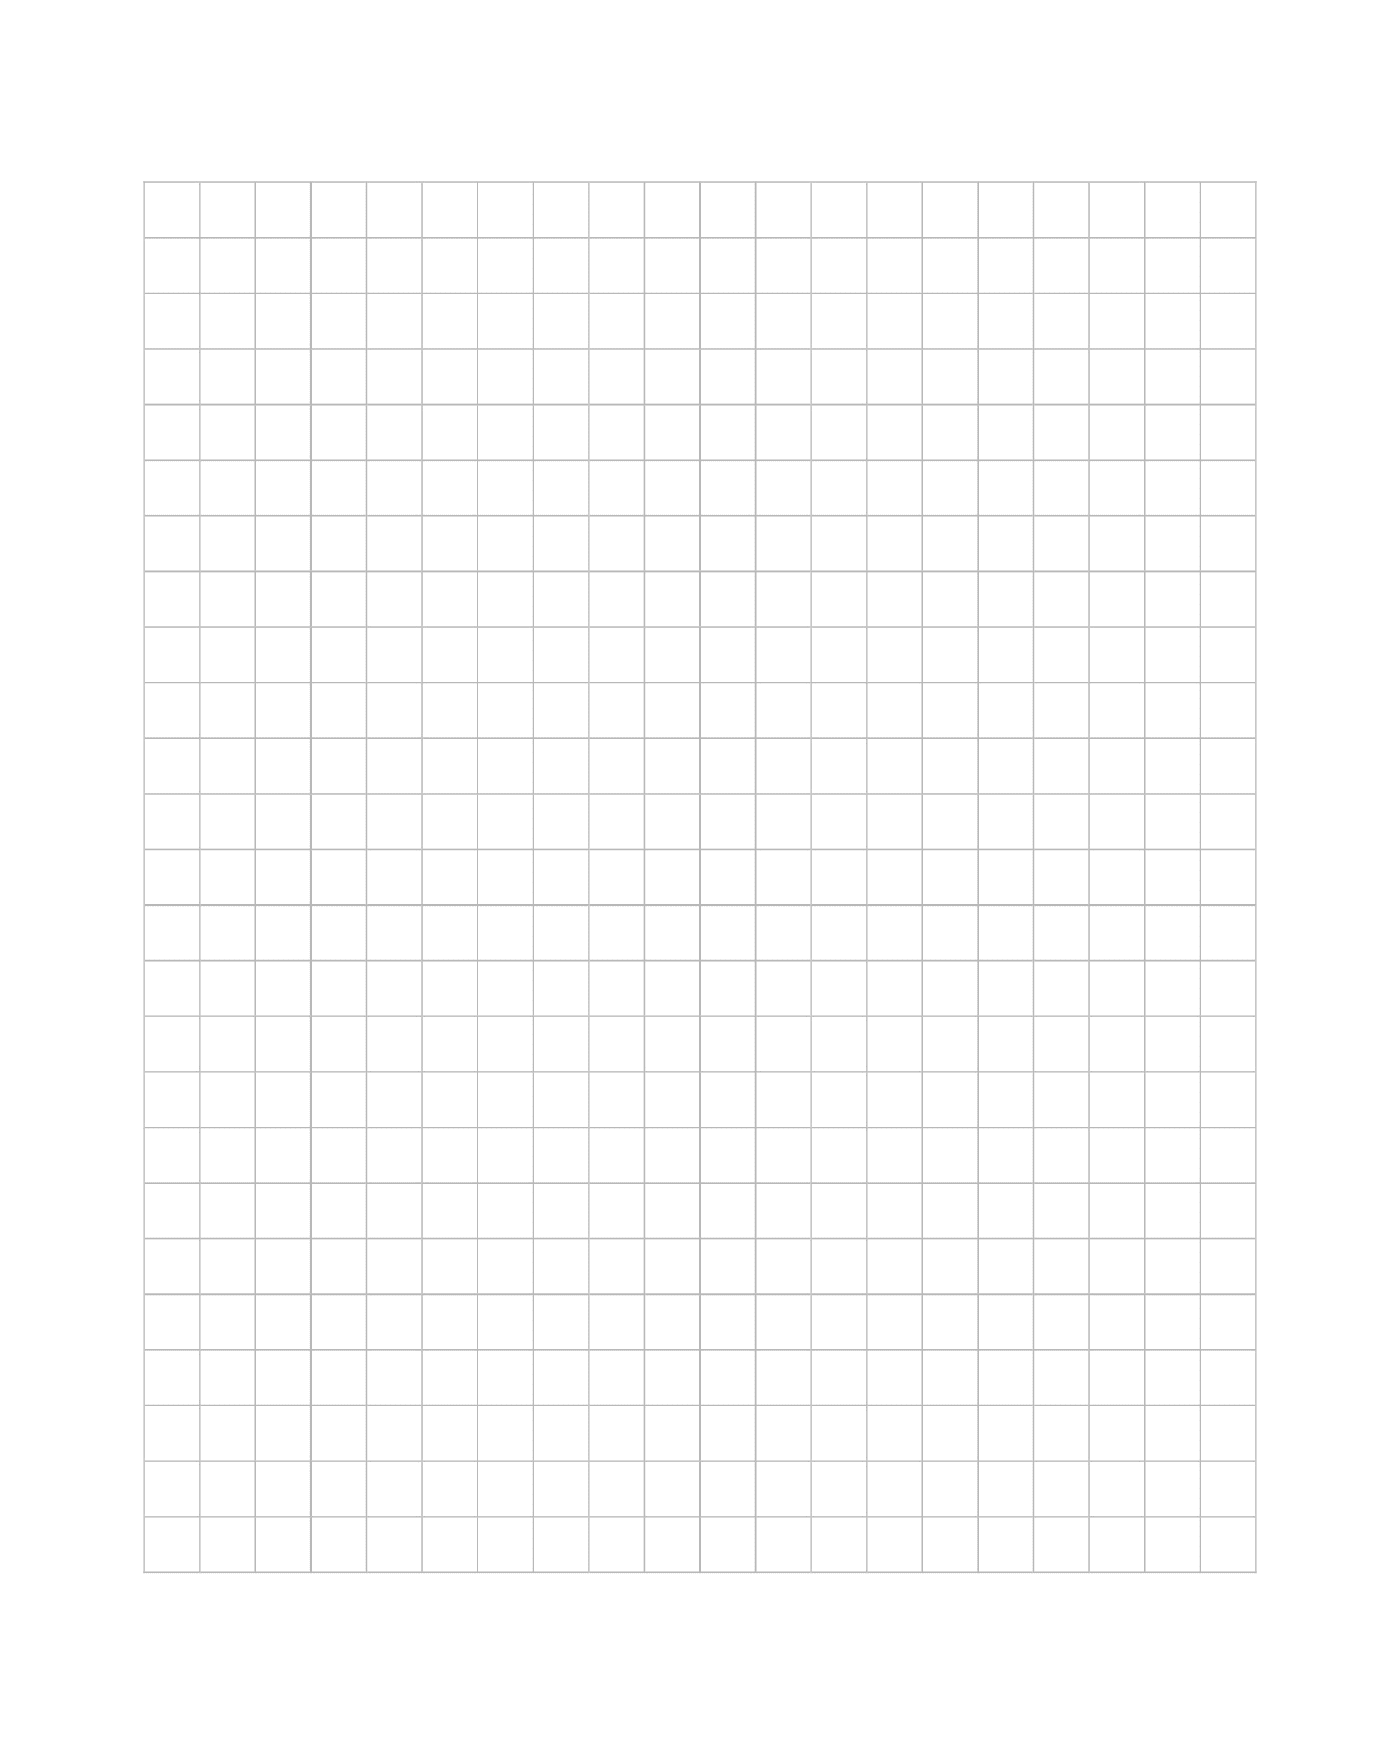  Ein leeres Raster, um Pixelkunst zu machen 